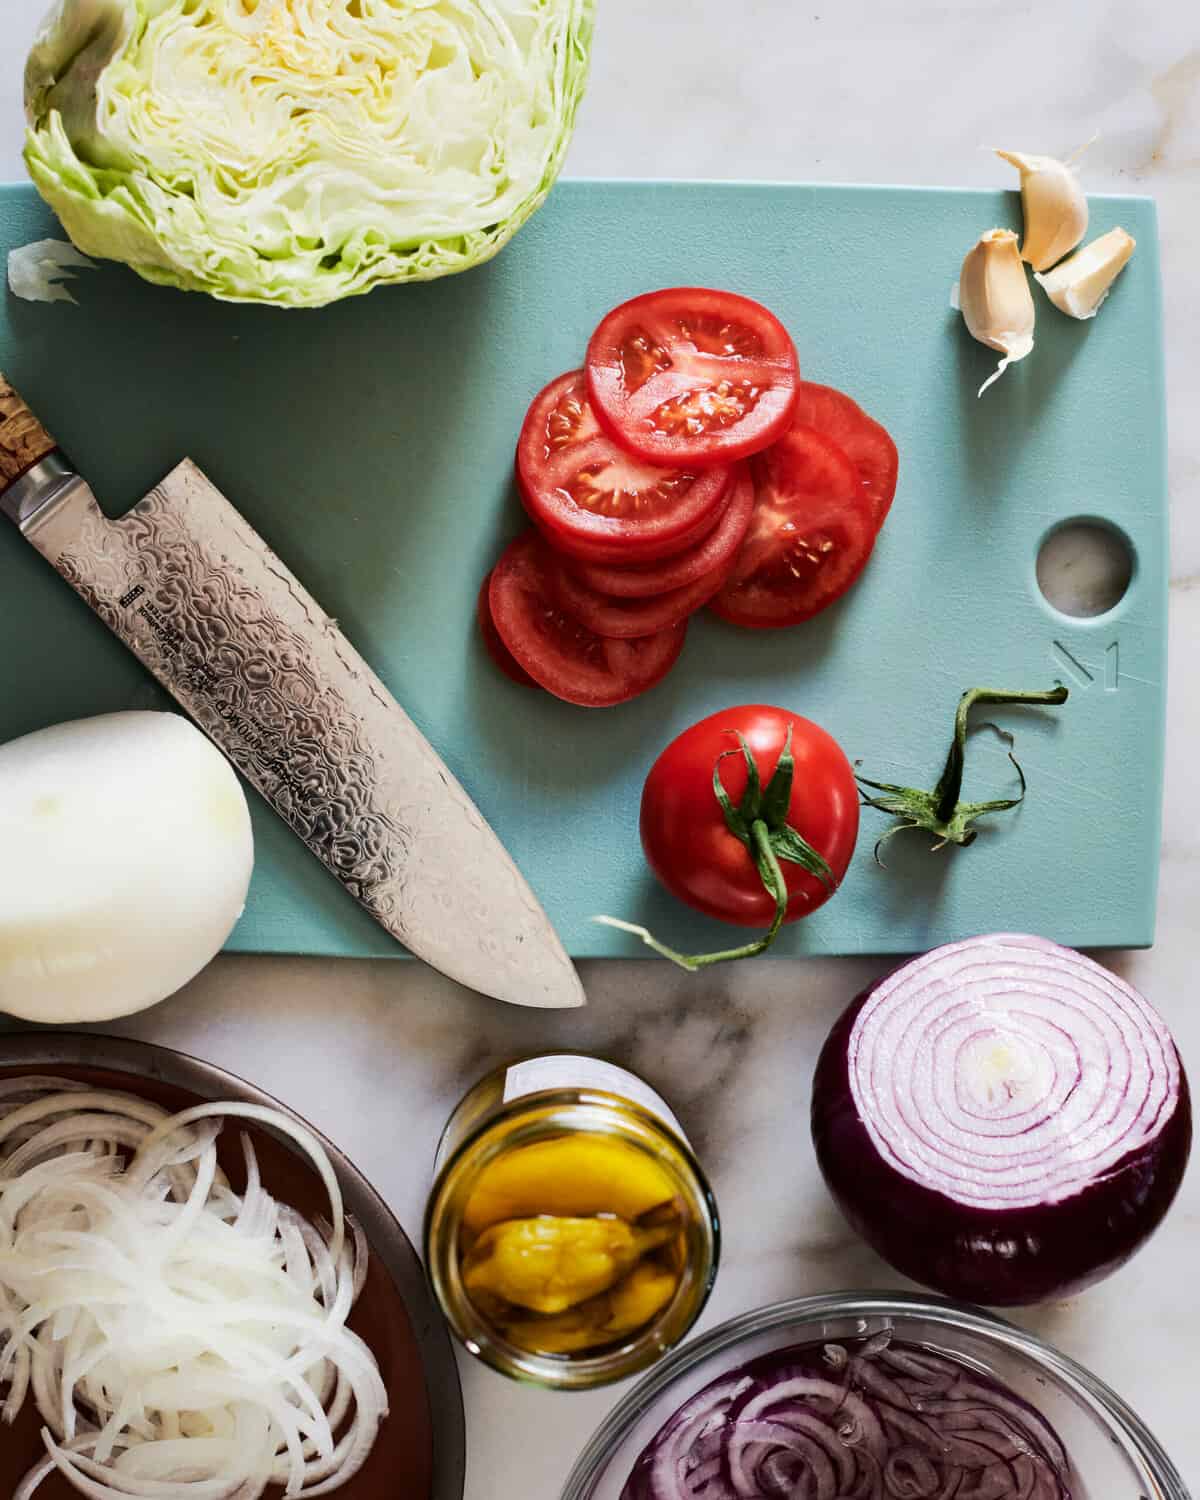 Grinder Sandwich Salad Ingredients